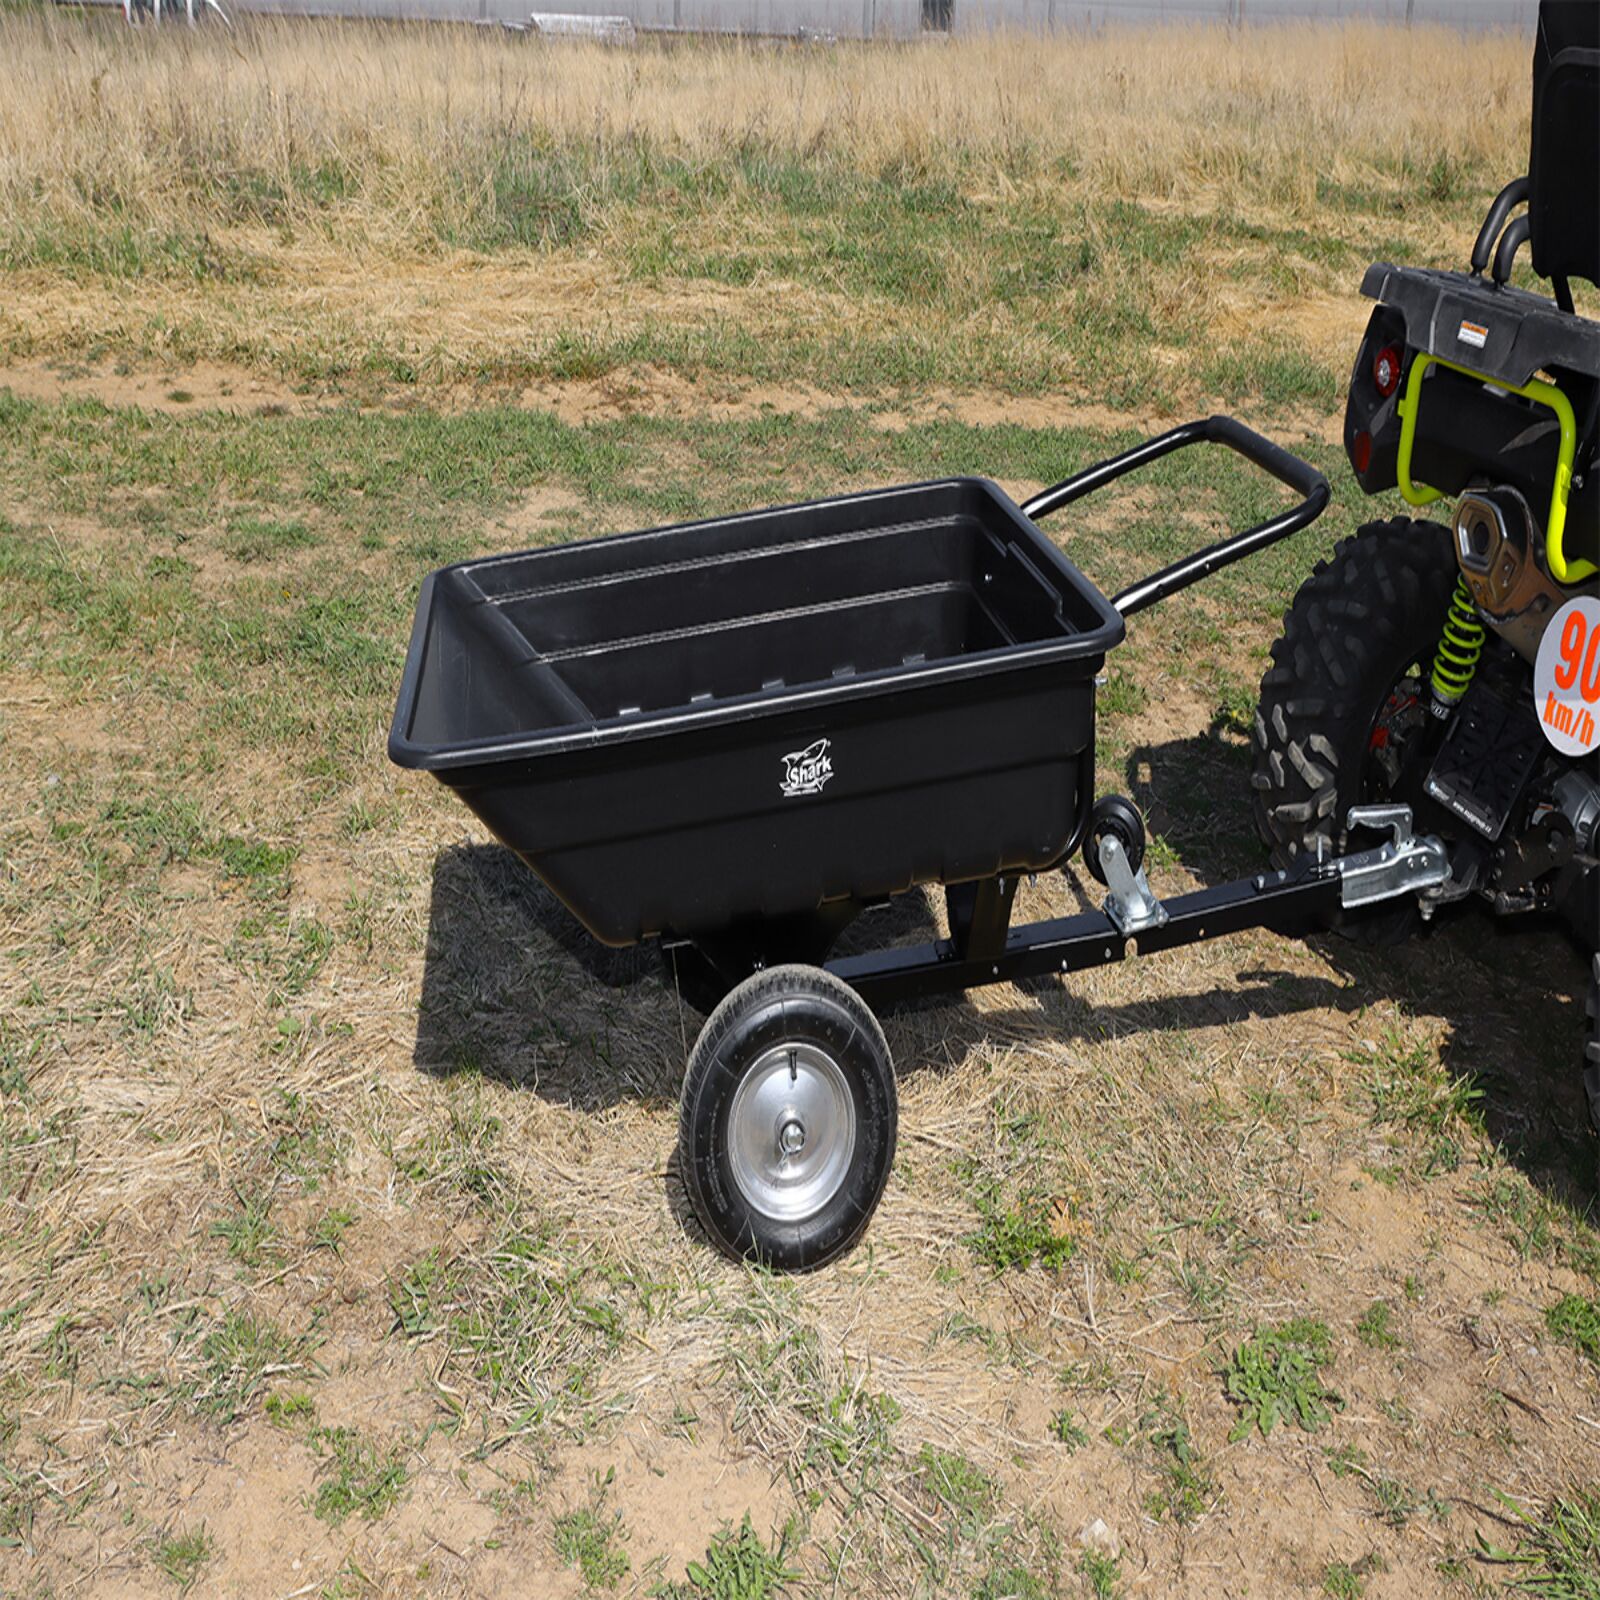 Obrázek produktu SHARK GARDEN 150 vozík za čtyřkolku, zahradní traktůrek, s adpatérem na tažné, černý 800-SE1W-BL